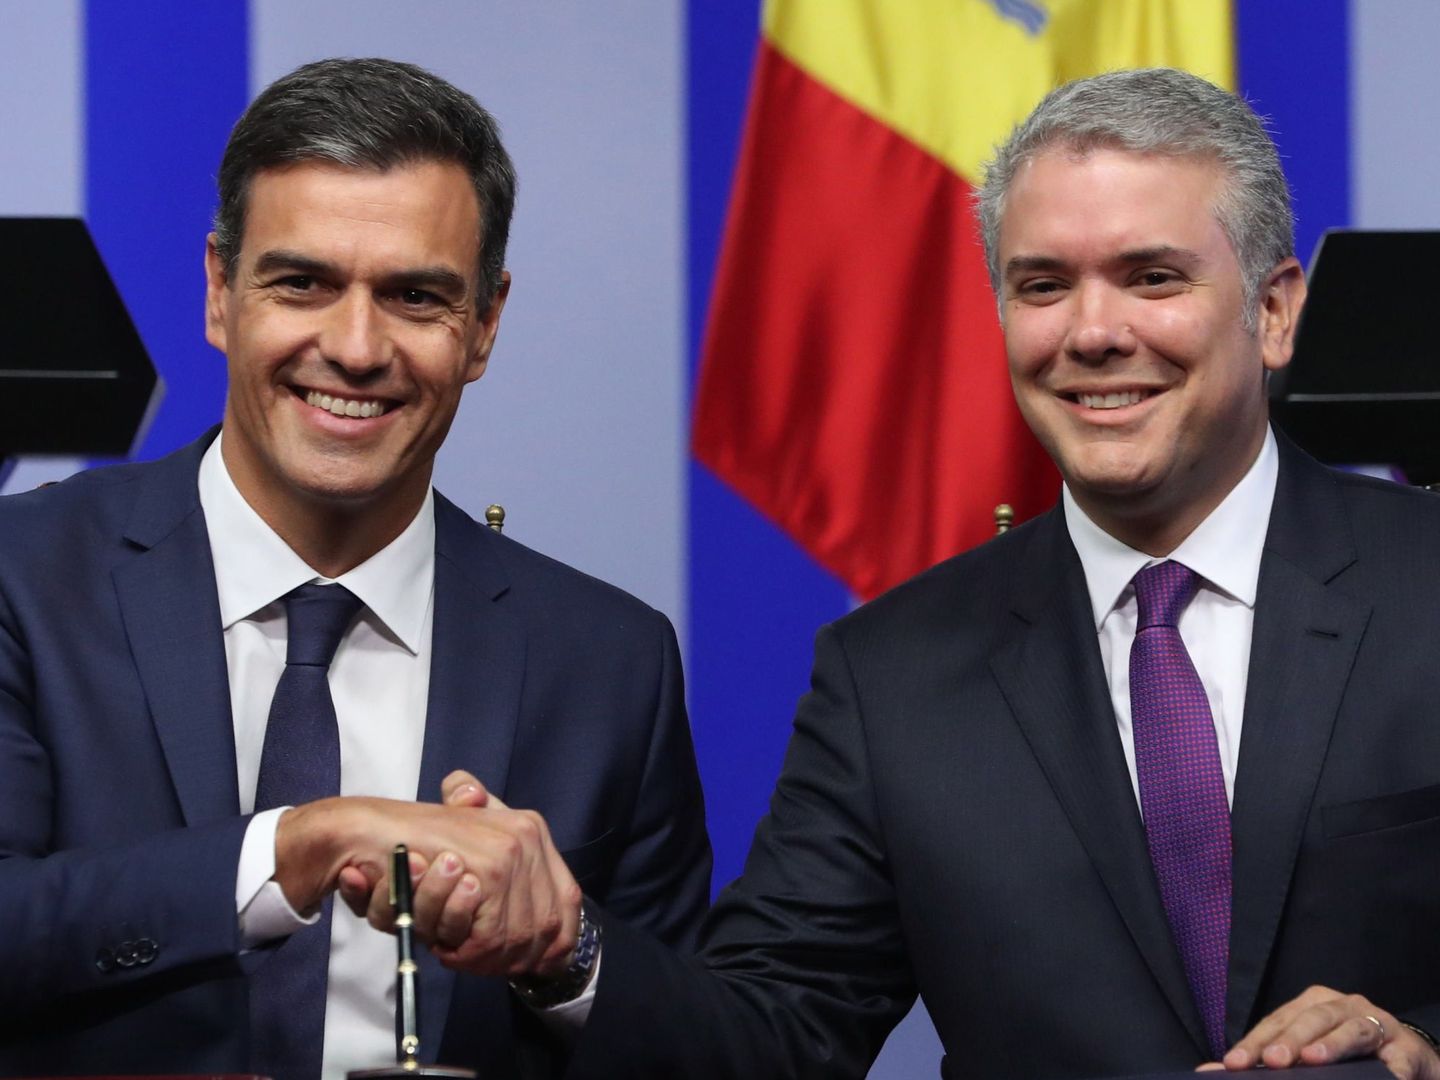 El presidente español, Pedro Sánchez, estrecha la mano de su homólogo colombiano, Iván Duque. (EFE)